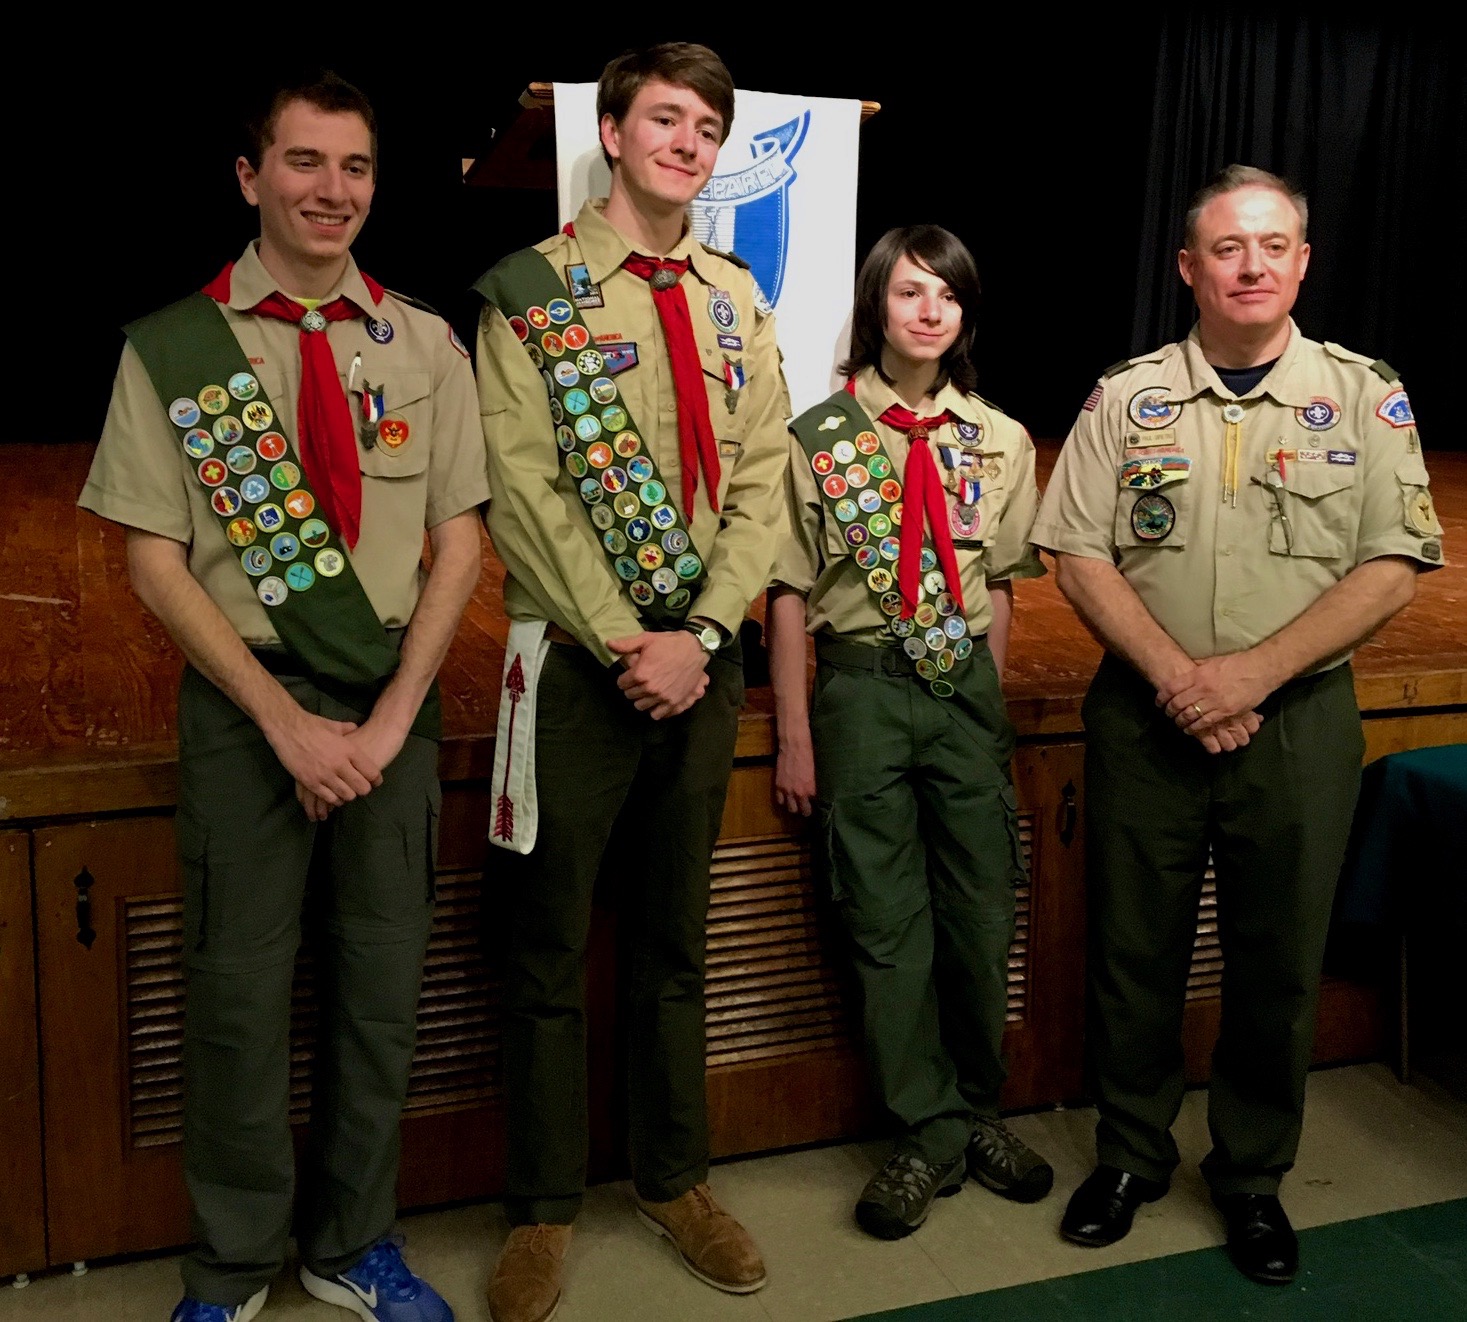 Three Members of West Hartford Boys Scout Troop Earn Eagle Scout Rank - We-Ha | West Hartford News